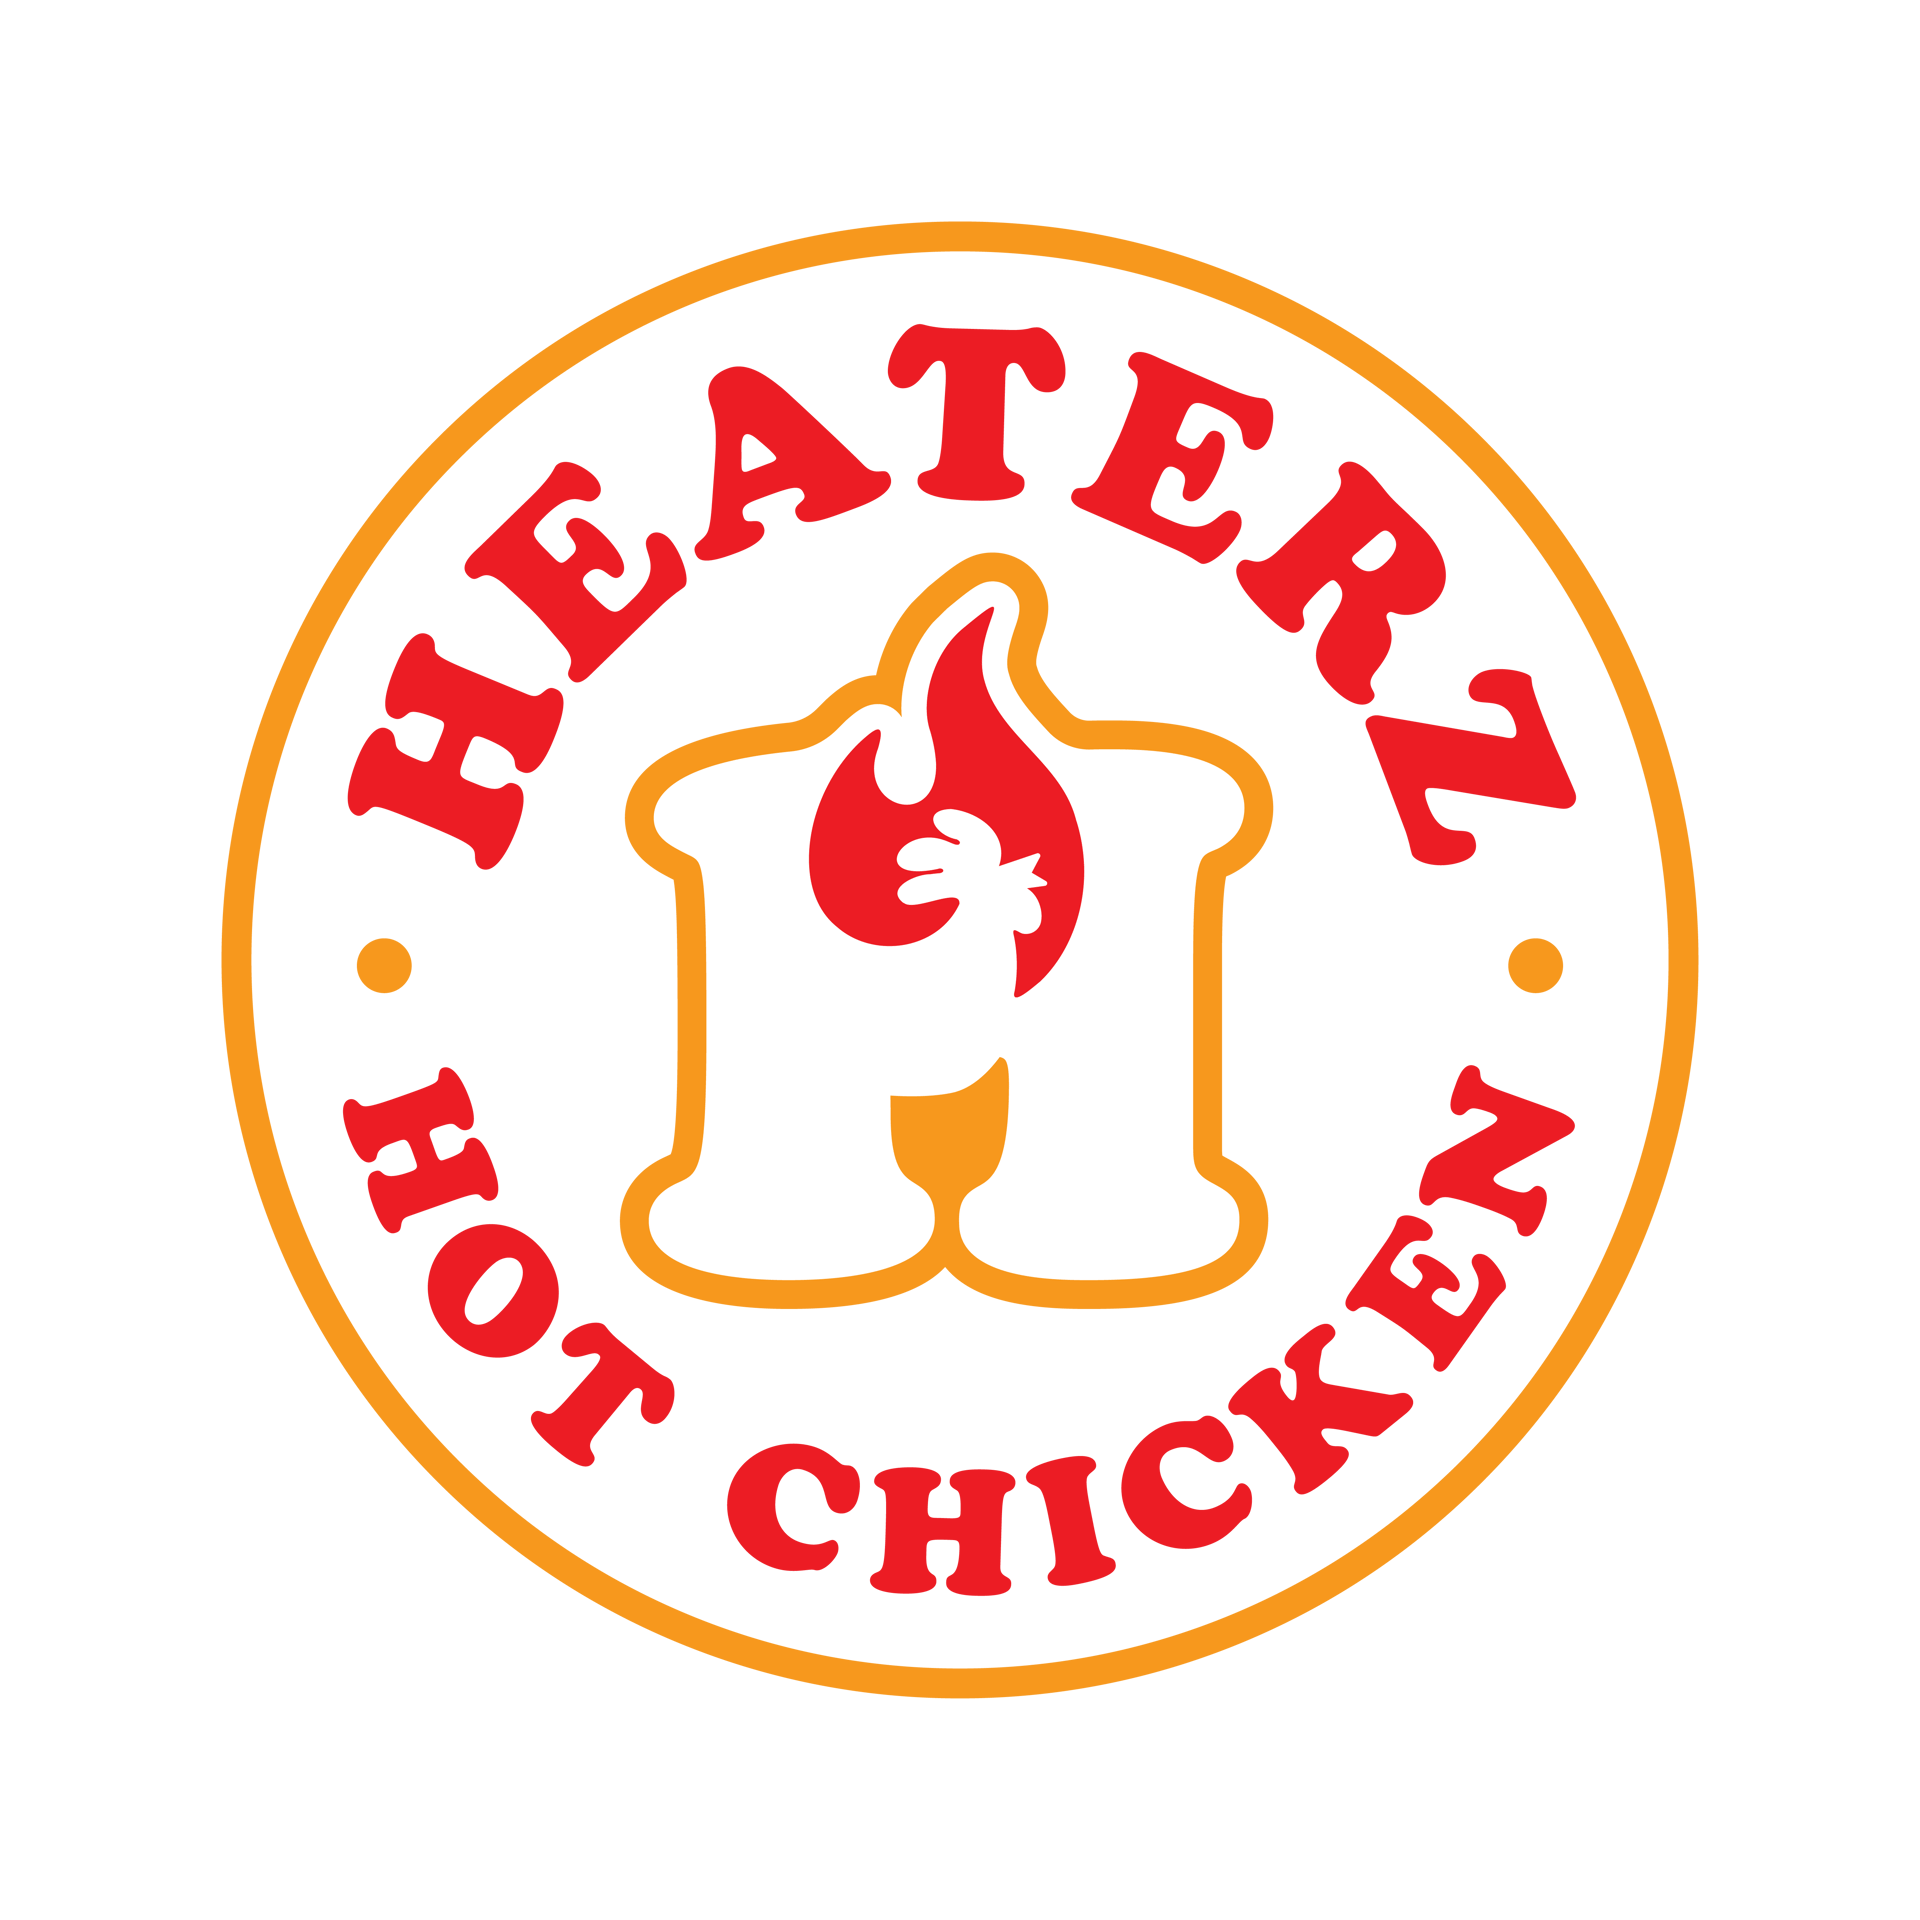 Heaterz Hot Chicken